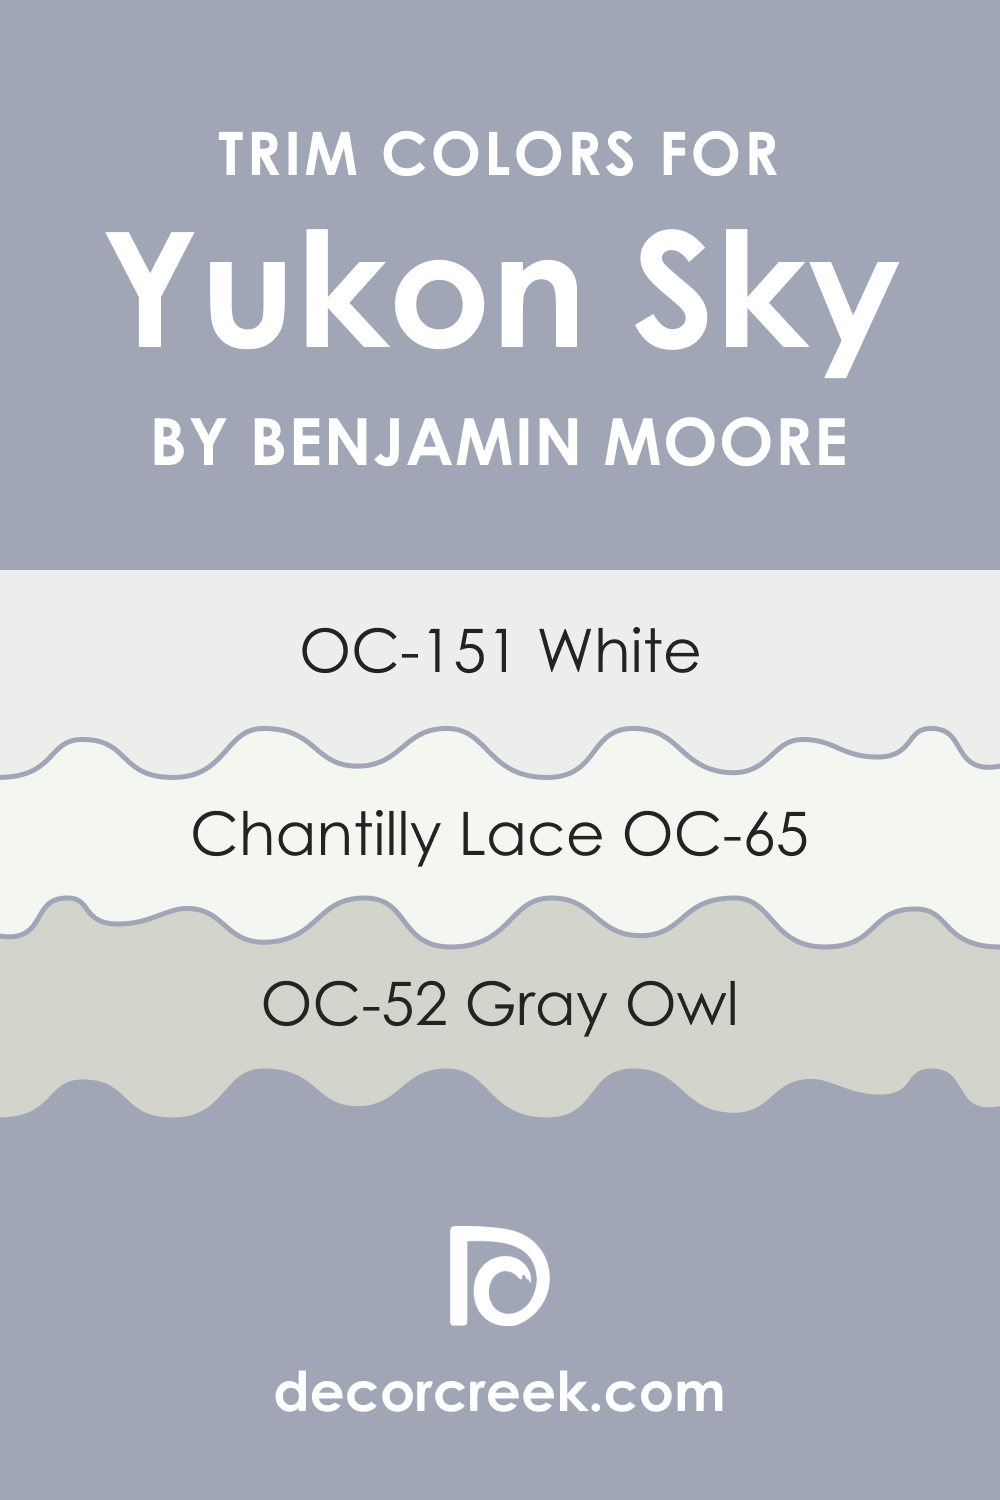 Trim Colors of Yukon Sky 1439